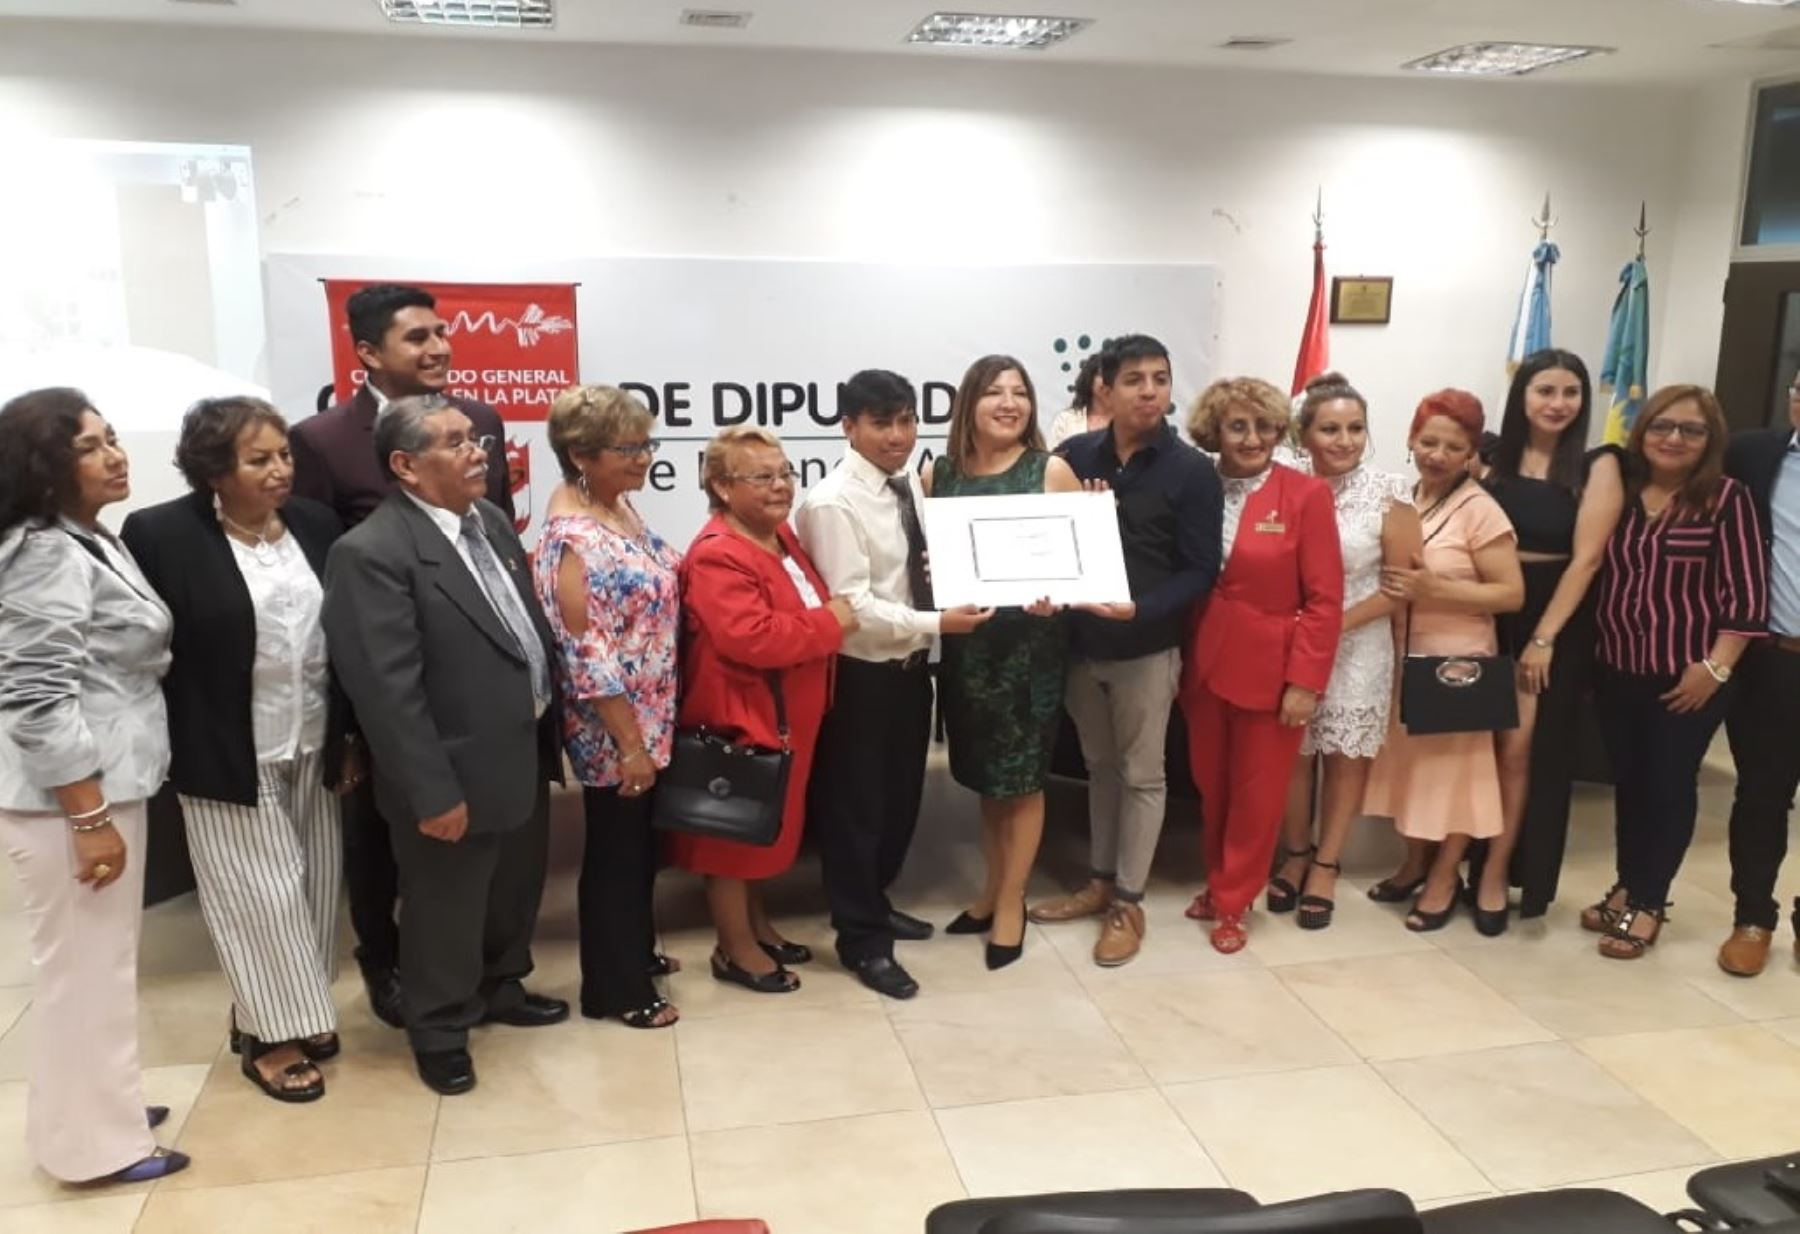 "Perú Vive 2019", es un mega evento realizado por el Consulado General del Perú en La Plata en coordinación con la Municipalidad de La Plata y diversas Asociaciones Peruanas a través de la Comisión Organizadora.